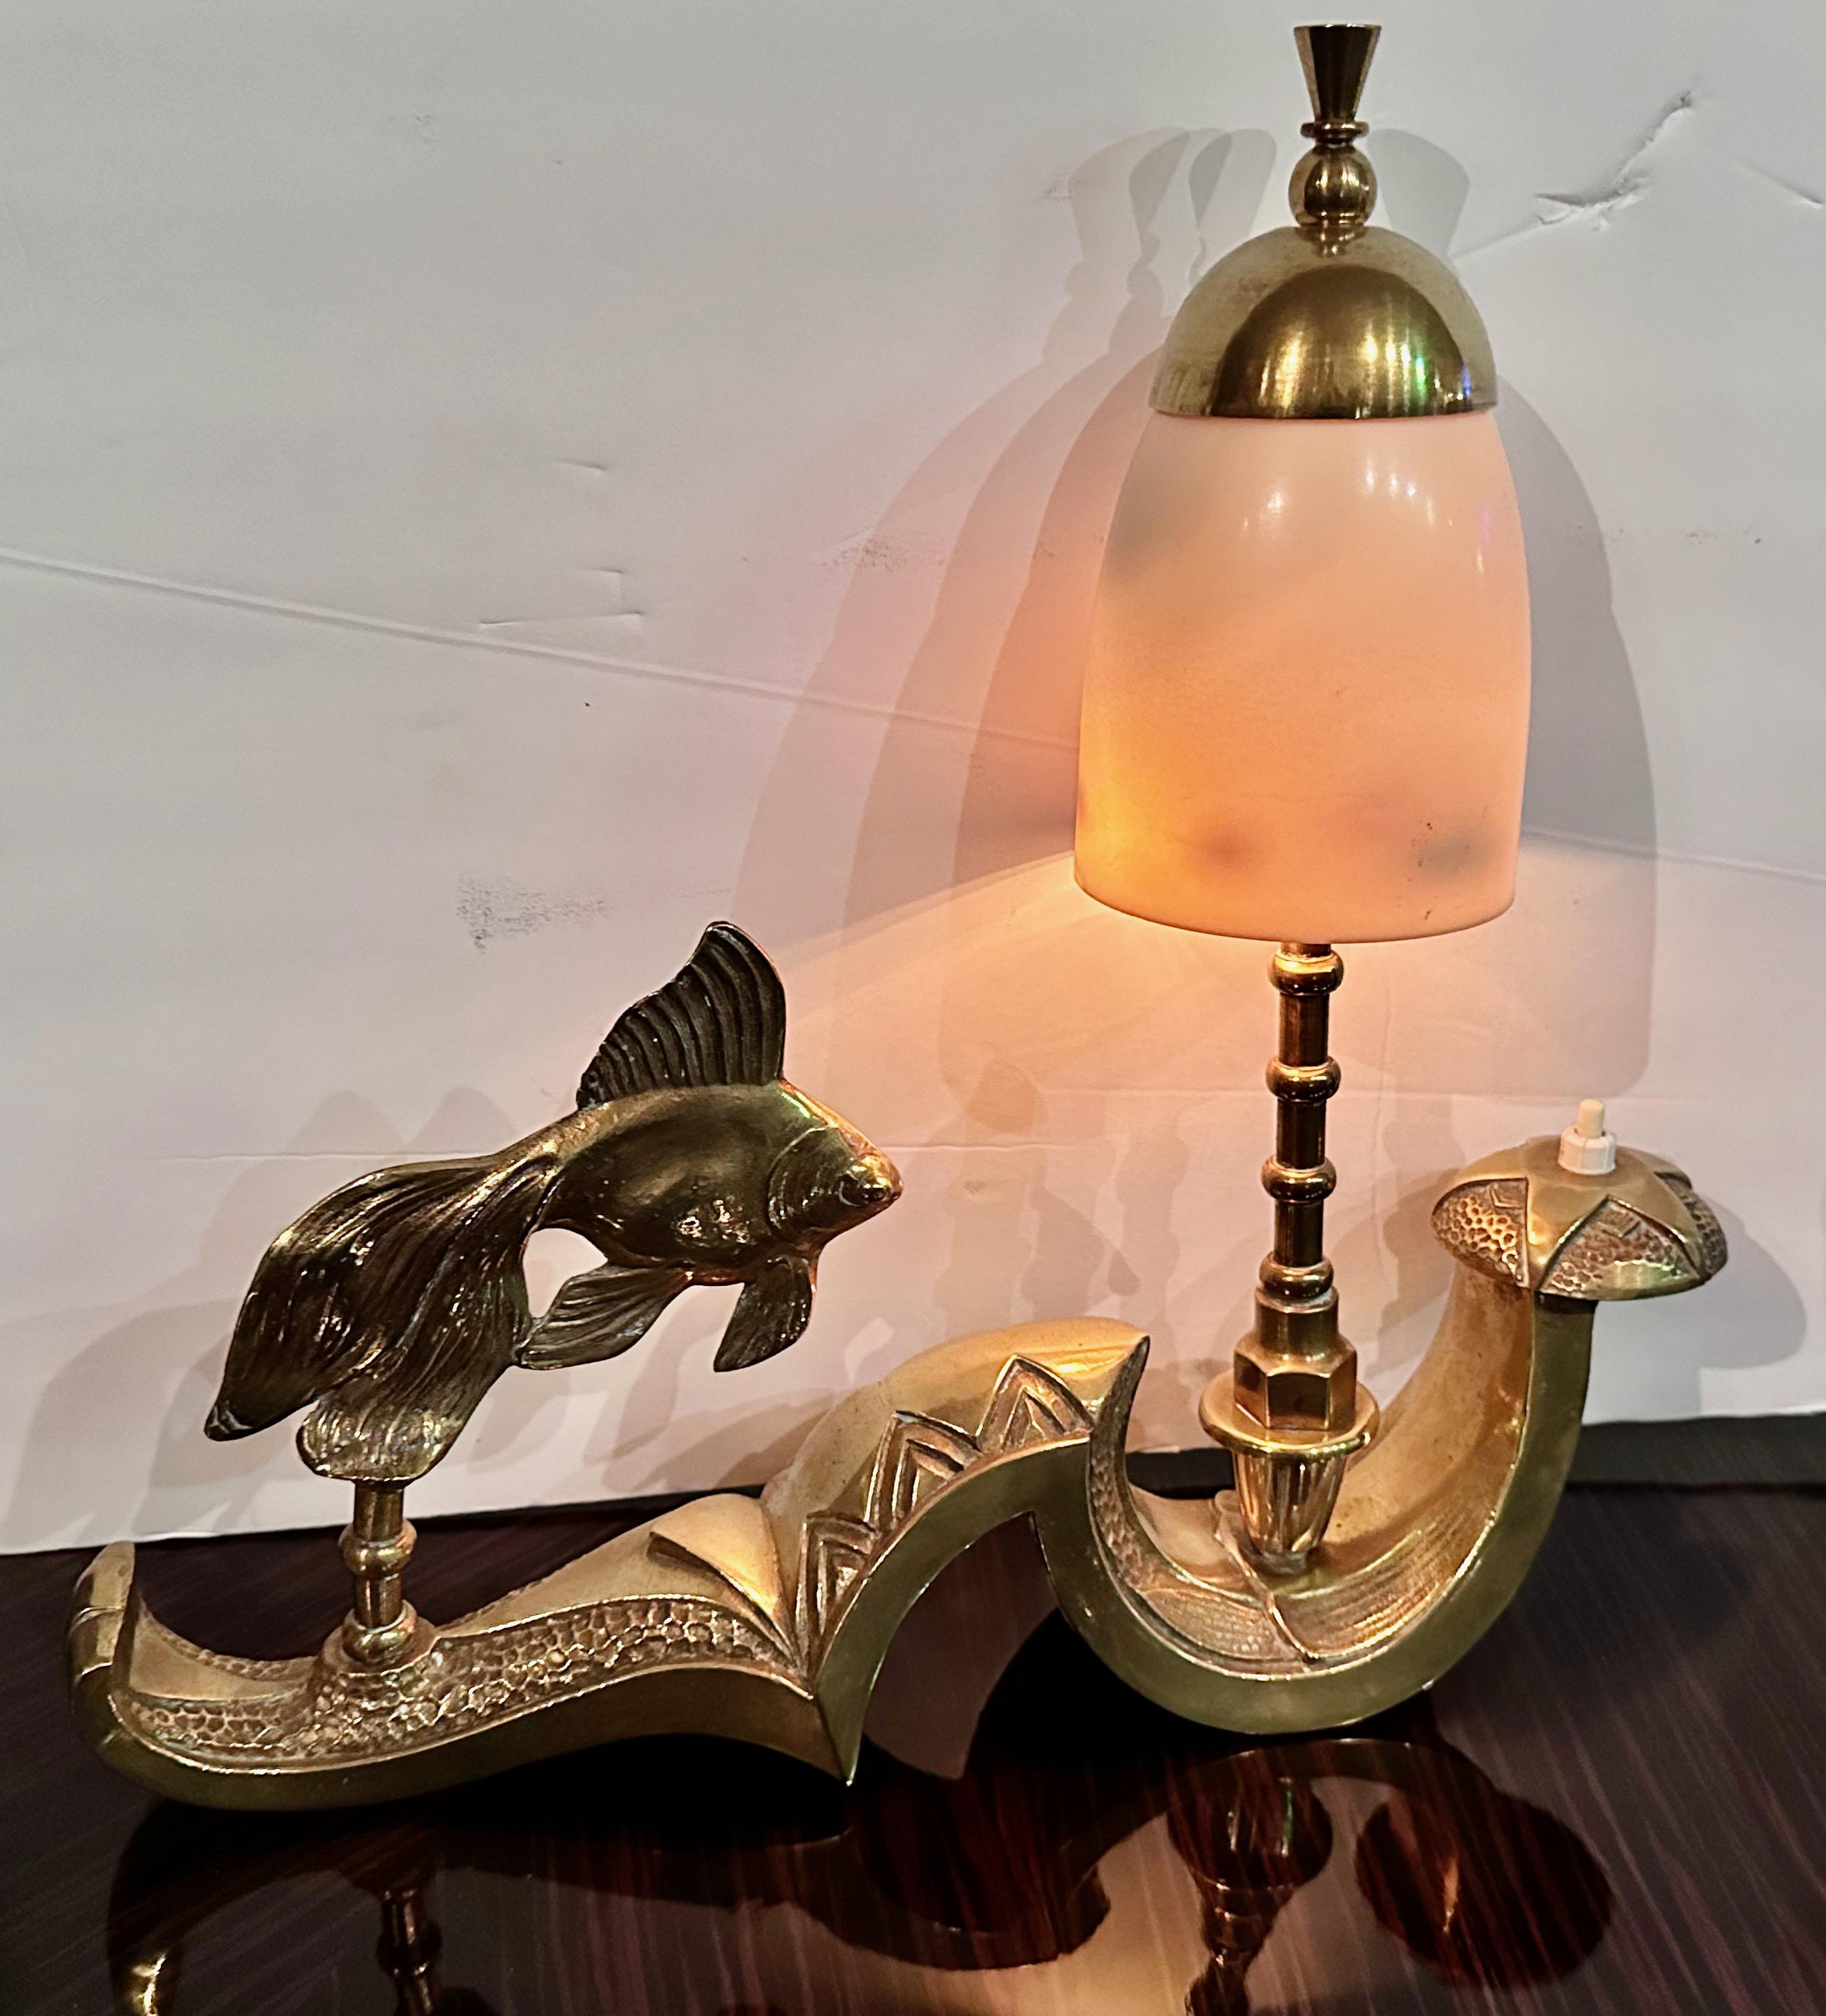 Die Art Deco Fish Sculpture Tischleuchte aus Frankreich ist ein einzigartiges Stück aus Messing mit integrierter Akzentbeleuchtung und einem verschnörkelten Sockel-Design. Die komplizierte Textur und die akribische Liebe zum Detail lassen darauf